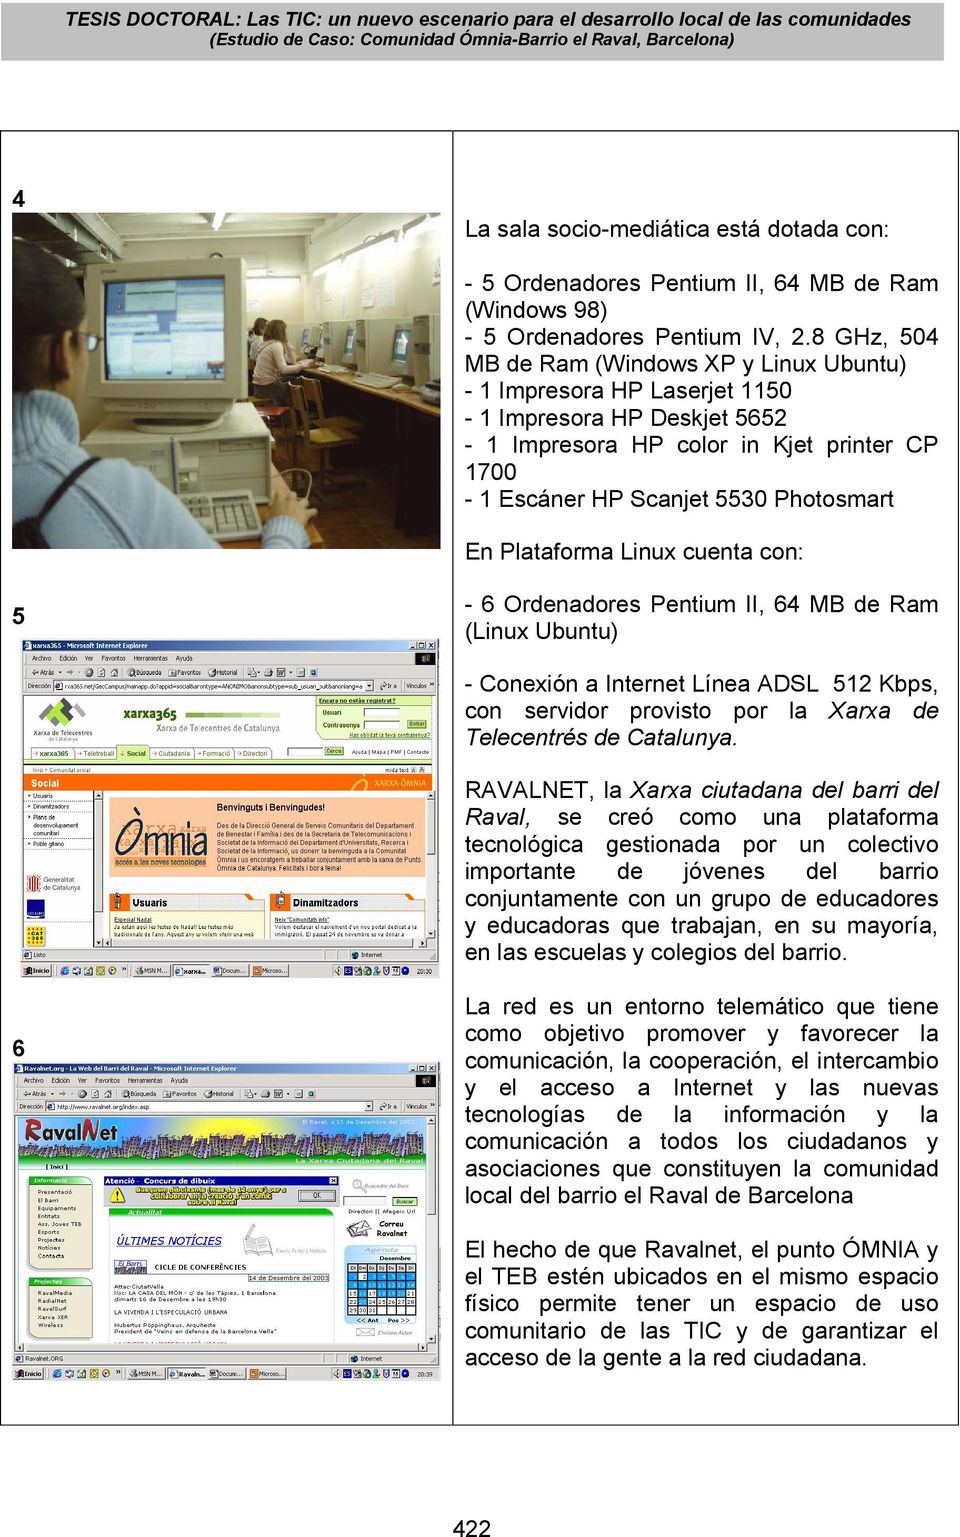 Linux cuenta con: 5-6 Ordenadores Pentium II, 6 MB de Ram (Linux Ubuntu) - Conexión a Internet Línea ADSL 5 Kbps, con servidor provisto por la Xarxa de Telecentrés de Catalunya.